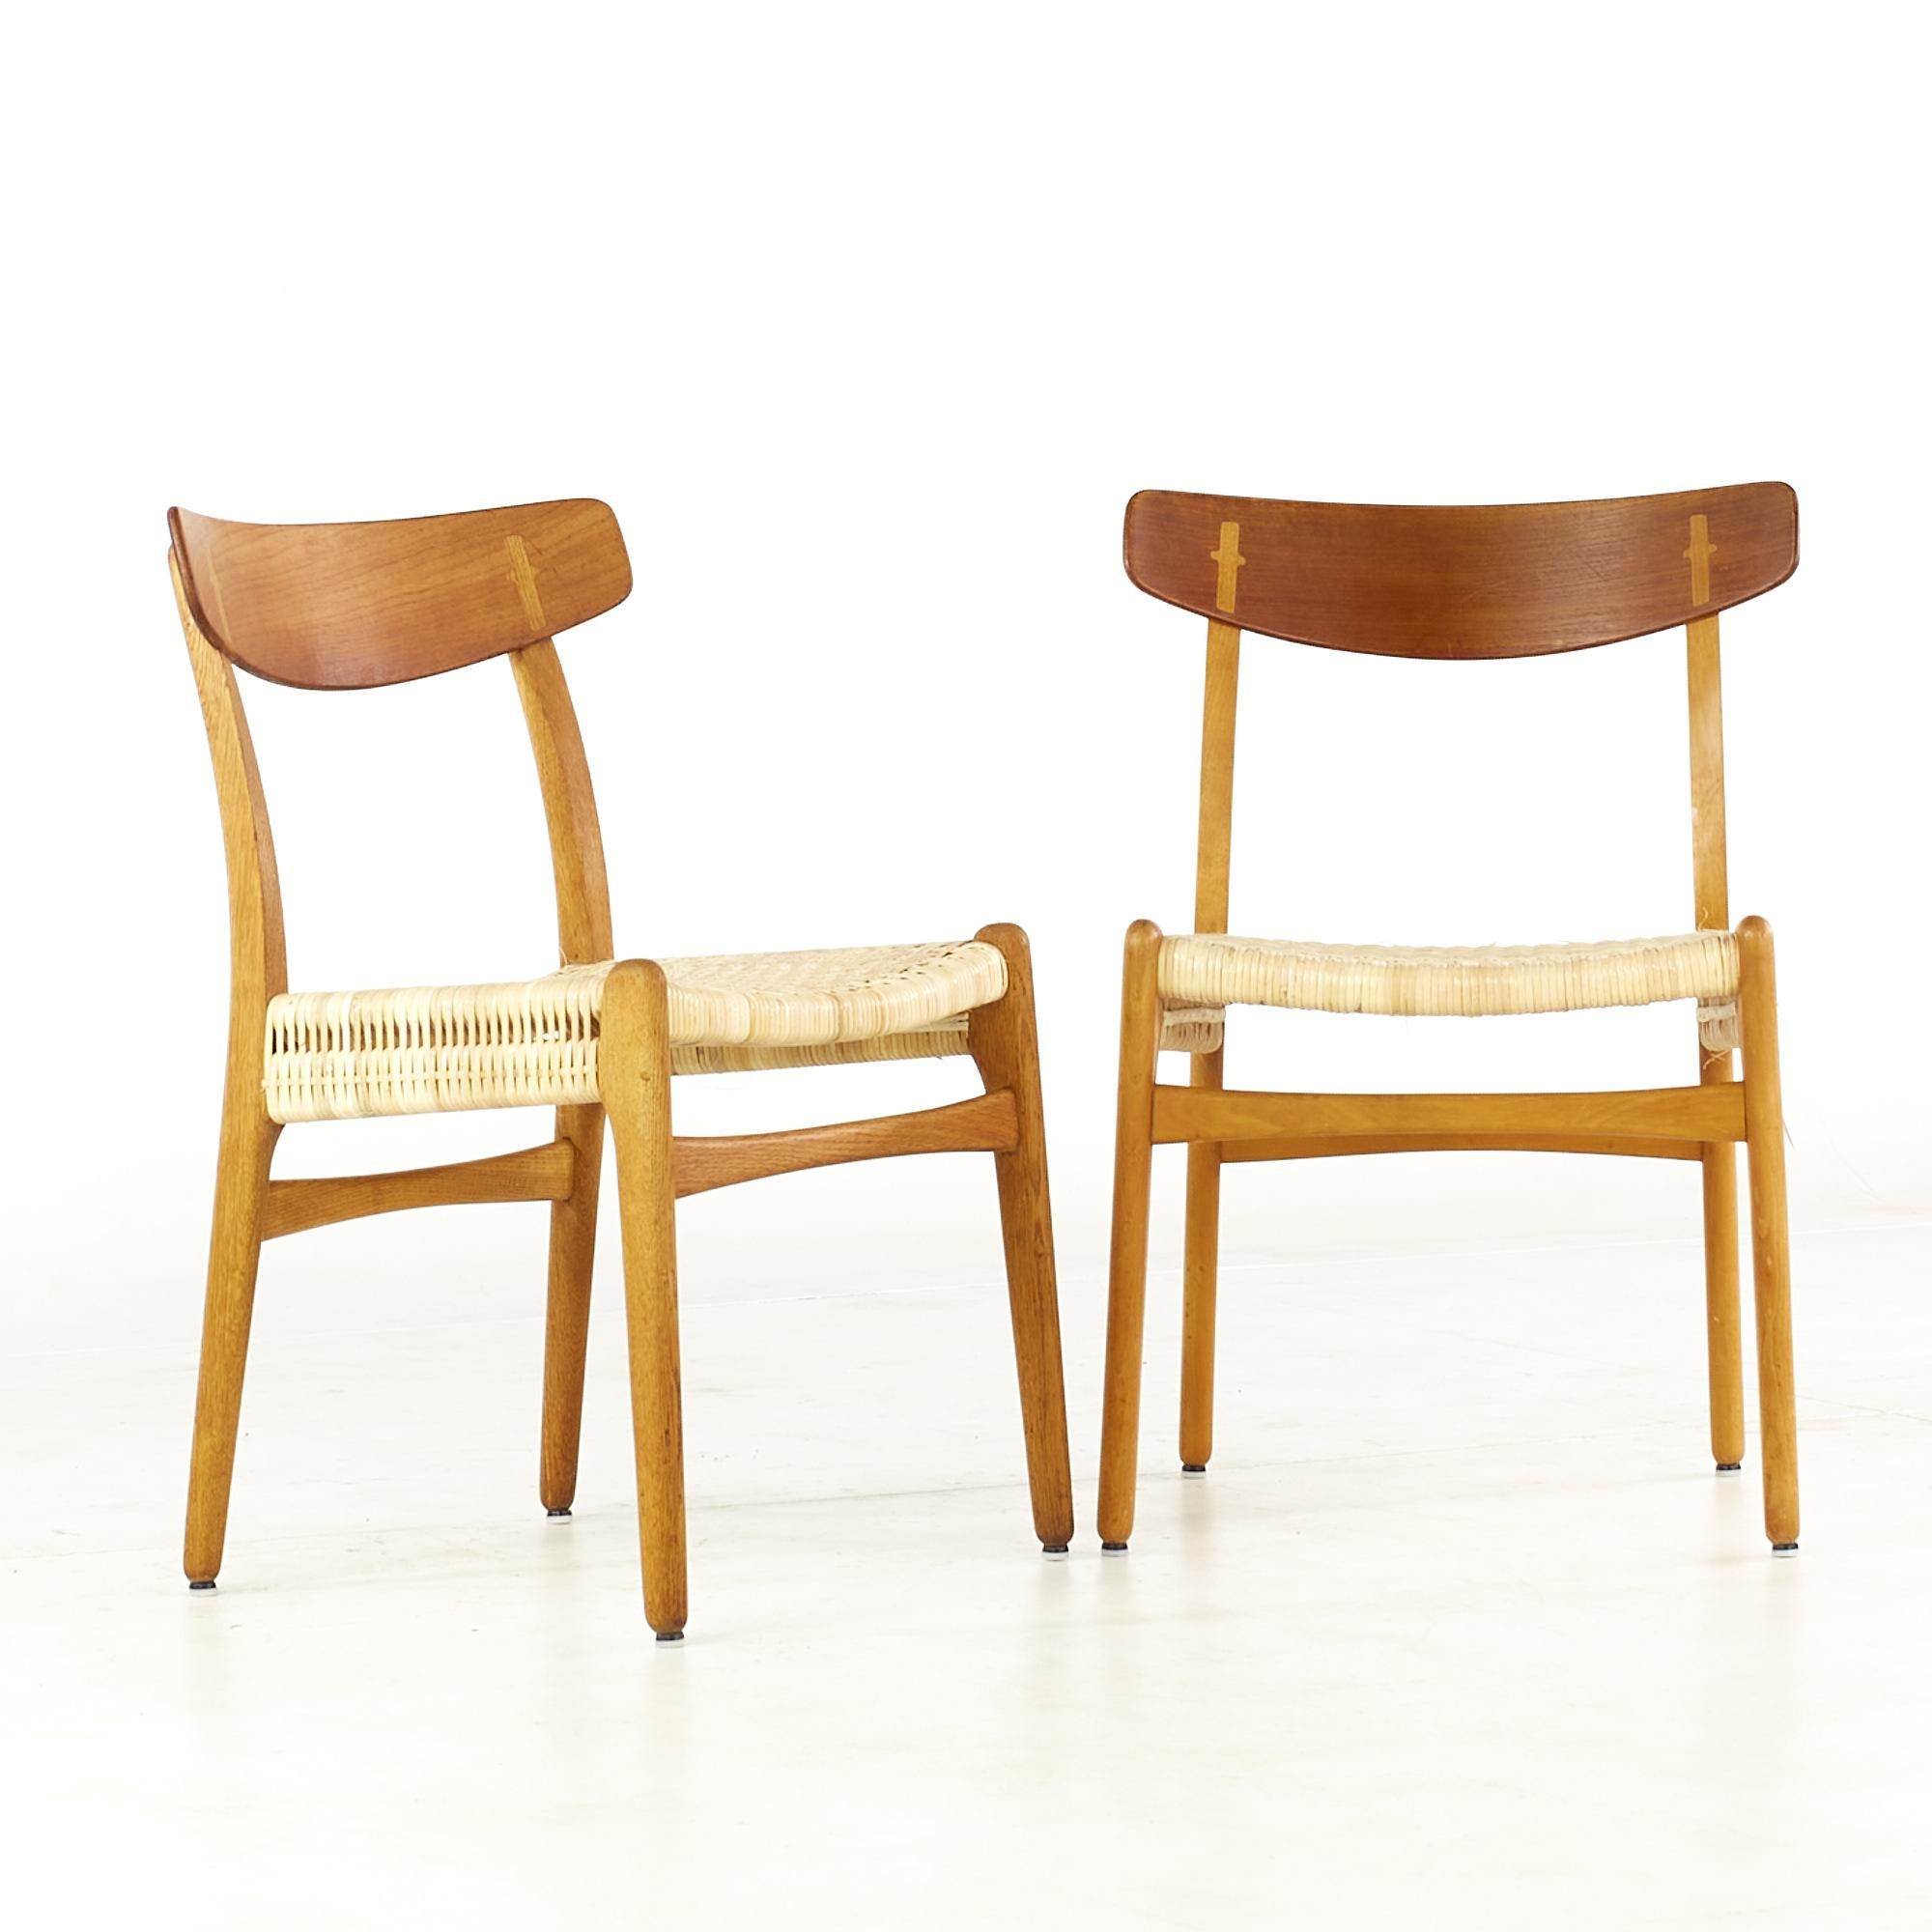 Hans Wegner pour Carl Hansen & Son Chaises de salle à manger CH23 en teck du milieu du siècle - Paire

Ces chaises mesurent : 18,5 de large x 19,5 de profond x 30,5 de haut, avec une hauteur d'assise et un dégagement de 18,25 pouces.

Tous les